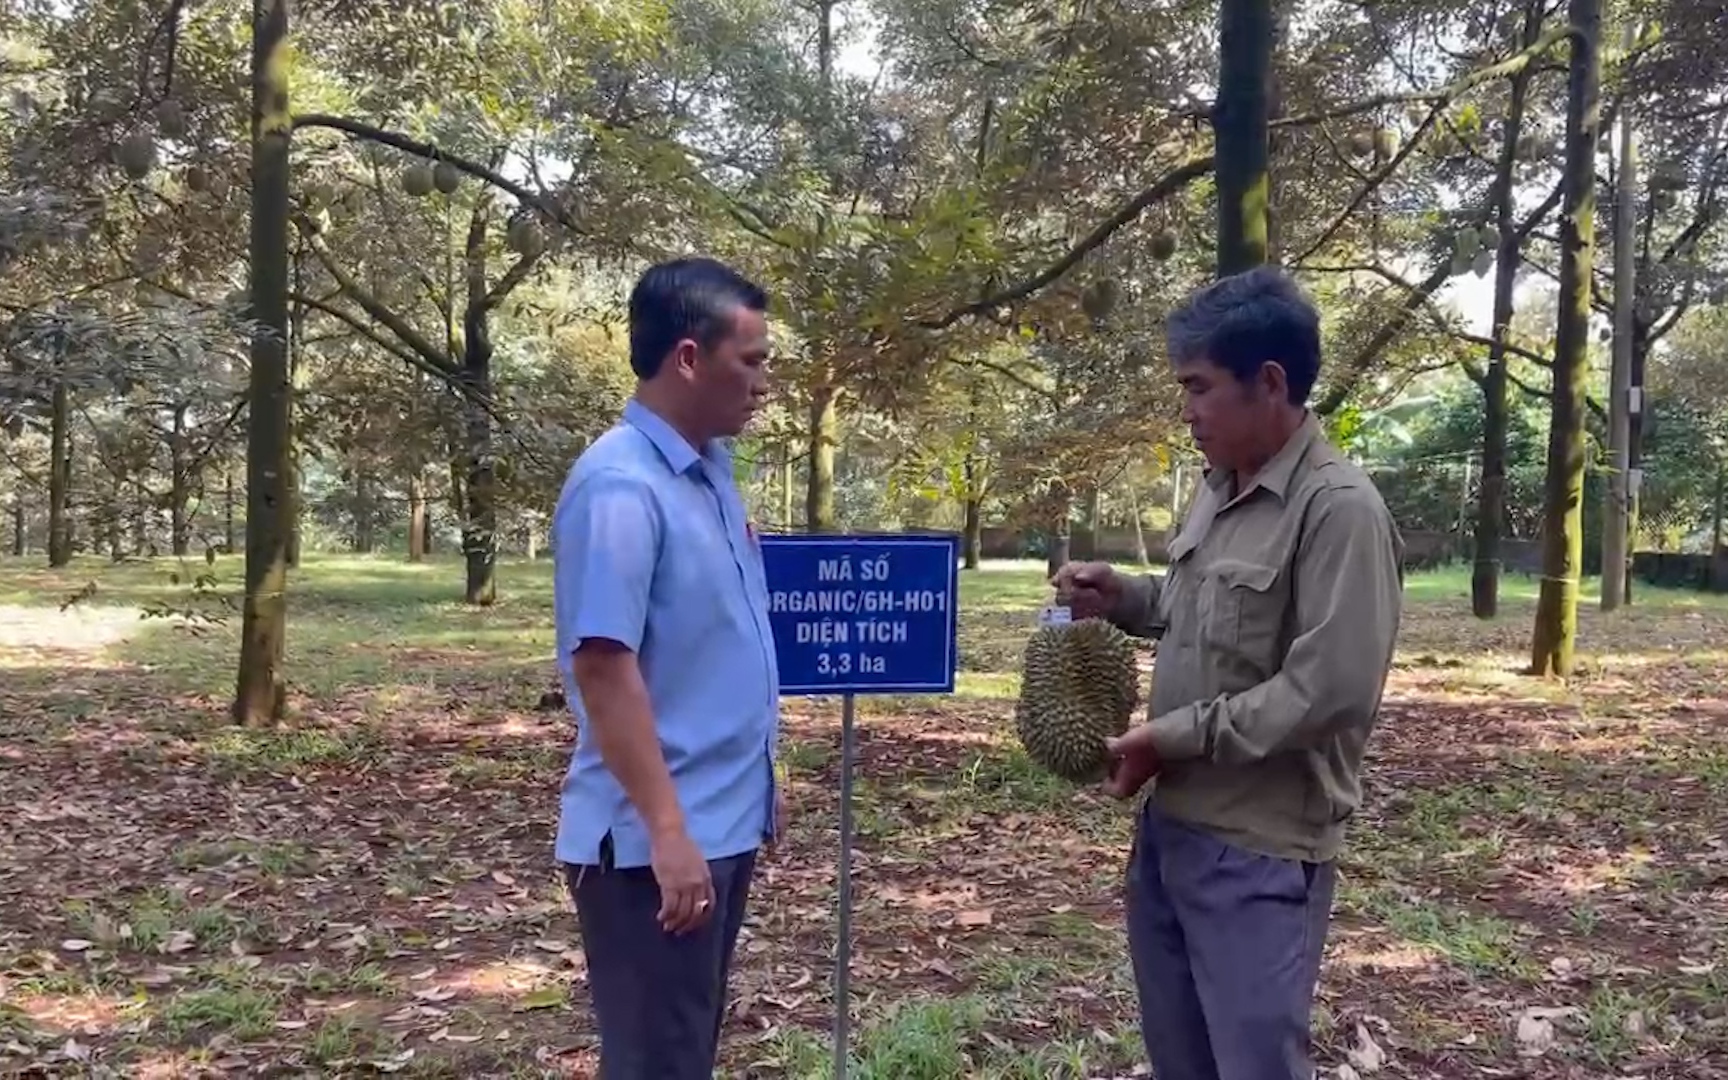 Vườn sầu riêng đầu tiên được cấp giấy chứng nhận đạt chuẩn hữu cơ ở Đồng Nai, thu hoạch bao nhiêu bán hết bấy nhiêu